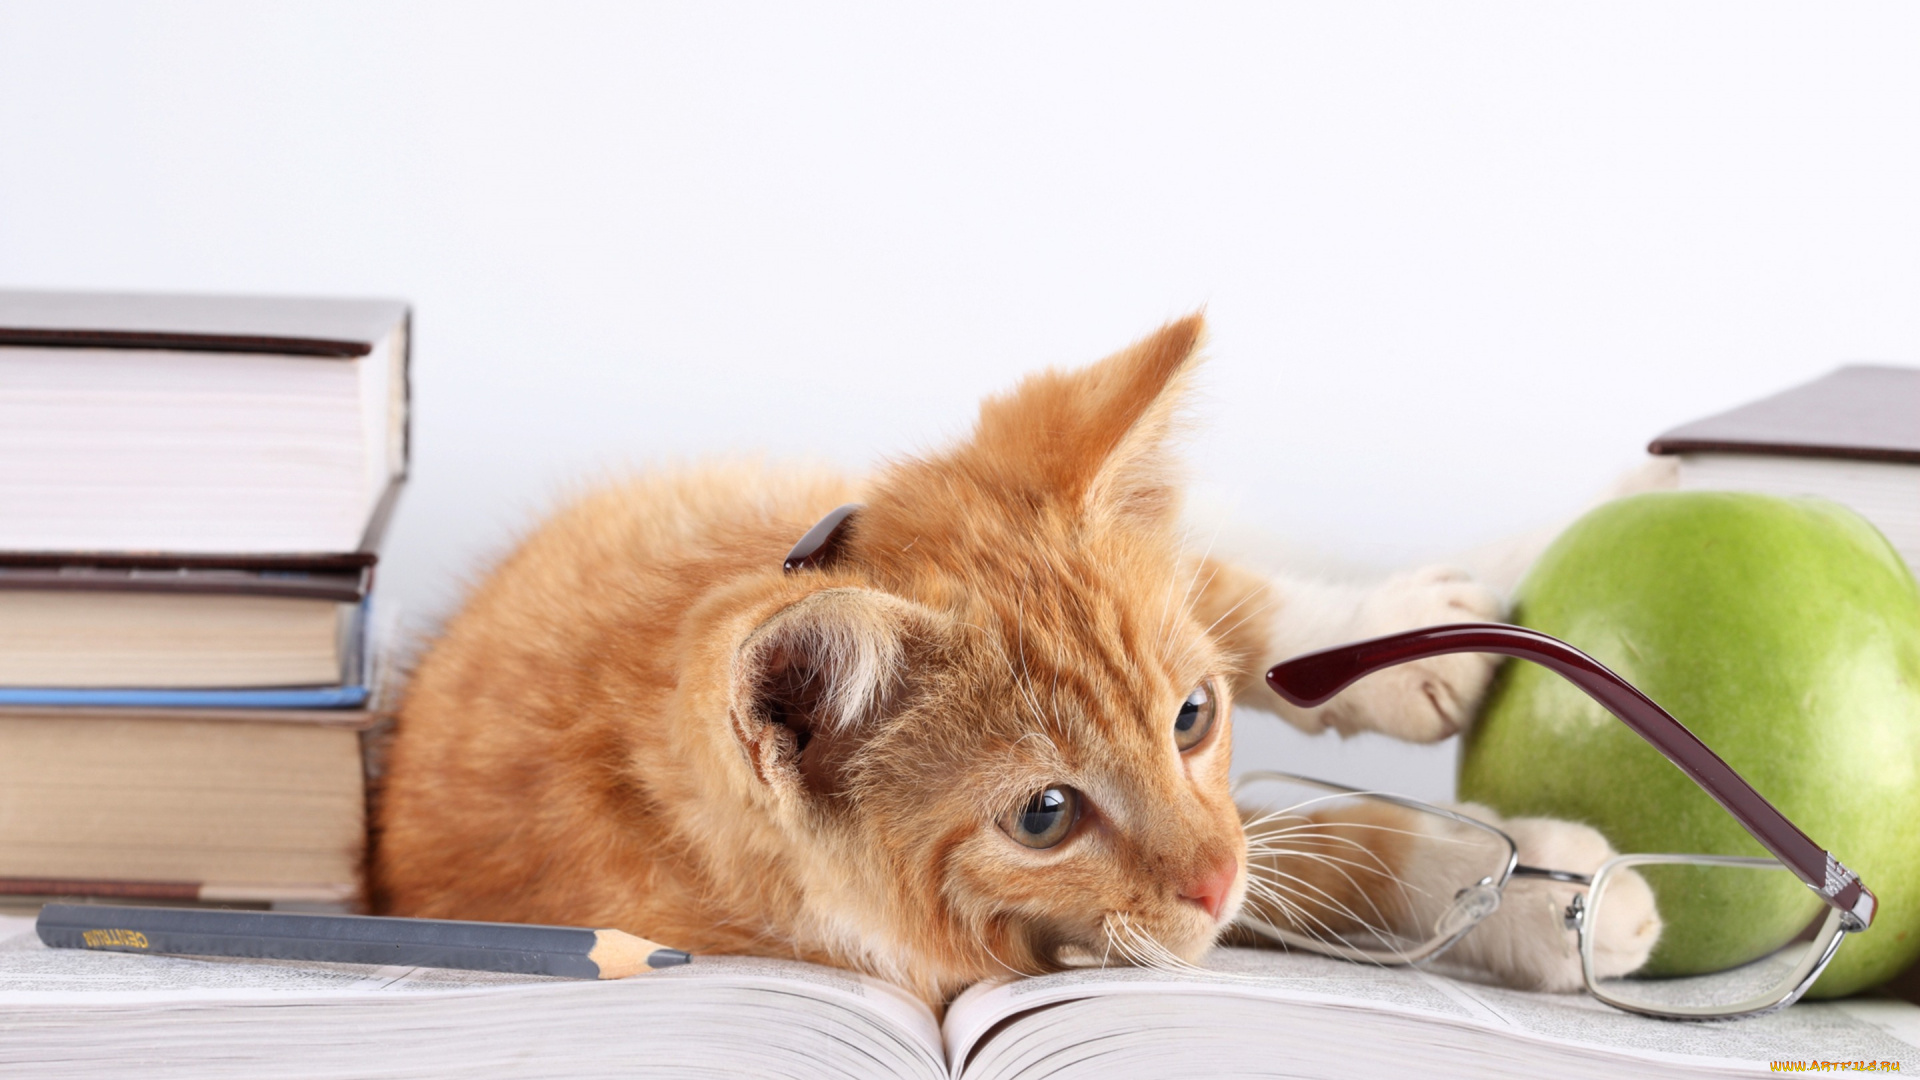 животные, коты, кот, очки, кошка, яблоко, рыжий, карандаш, книги, лежит